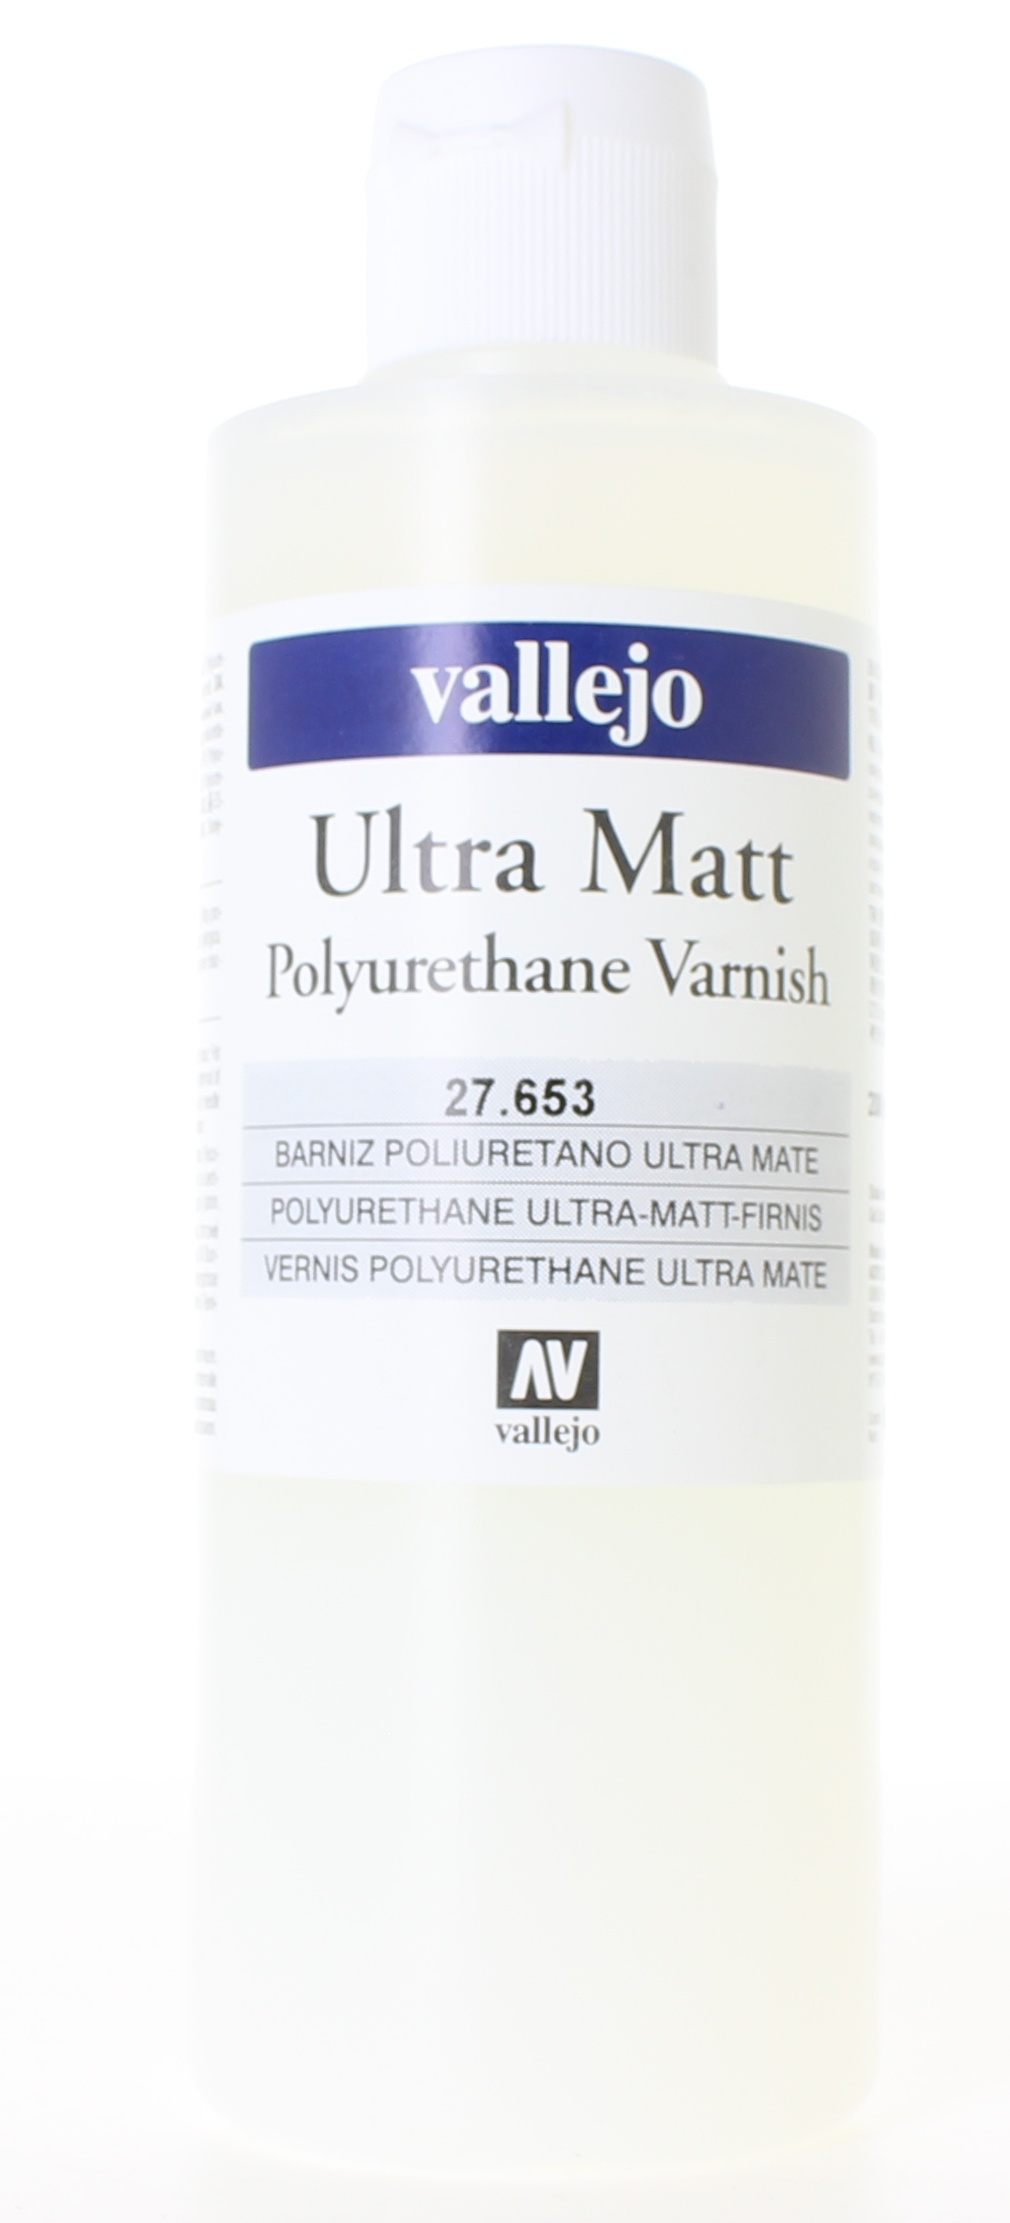 Vallejo Ultra Matt Varnish